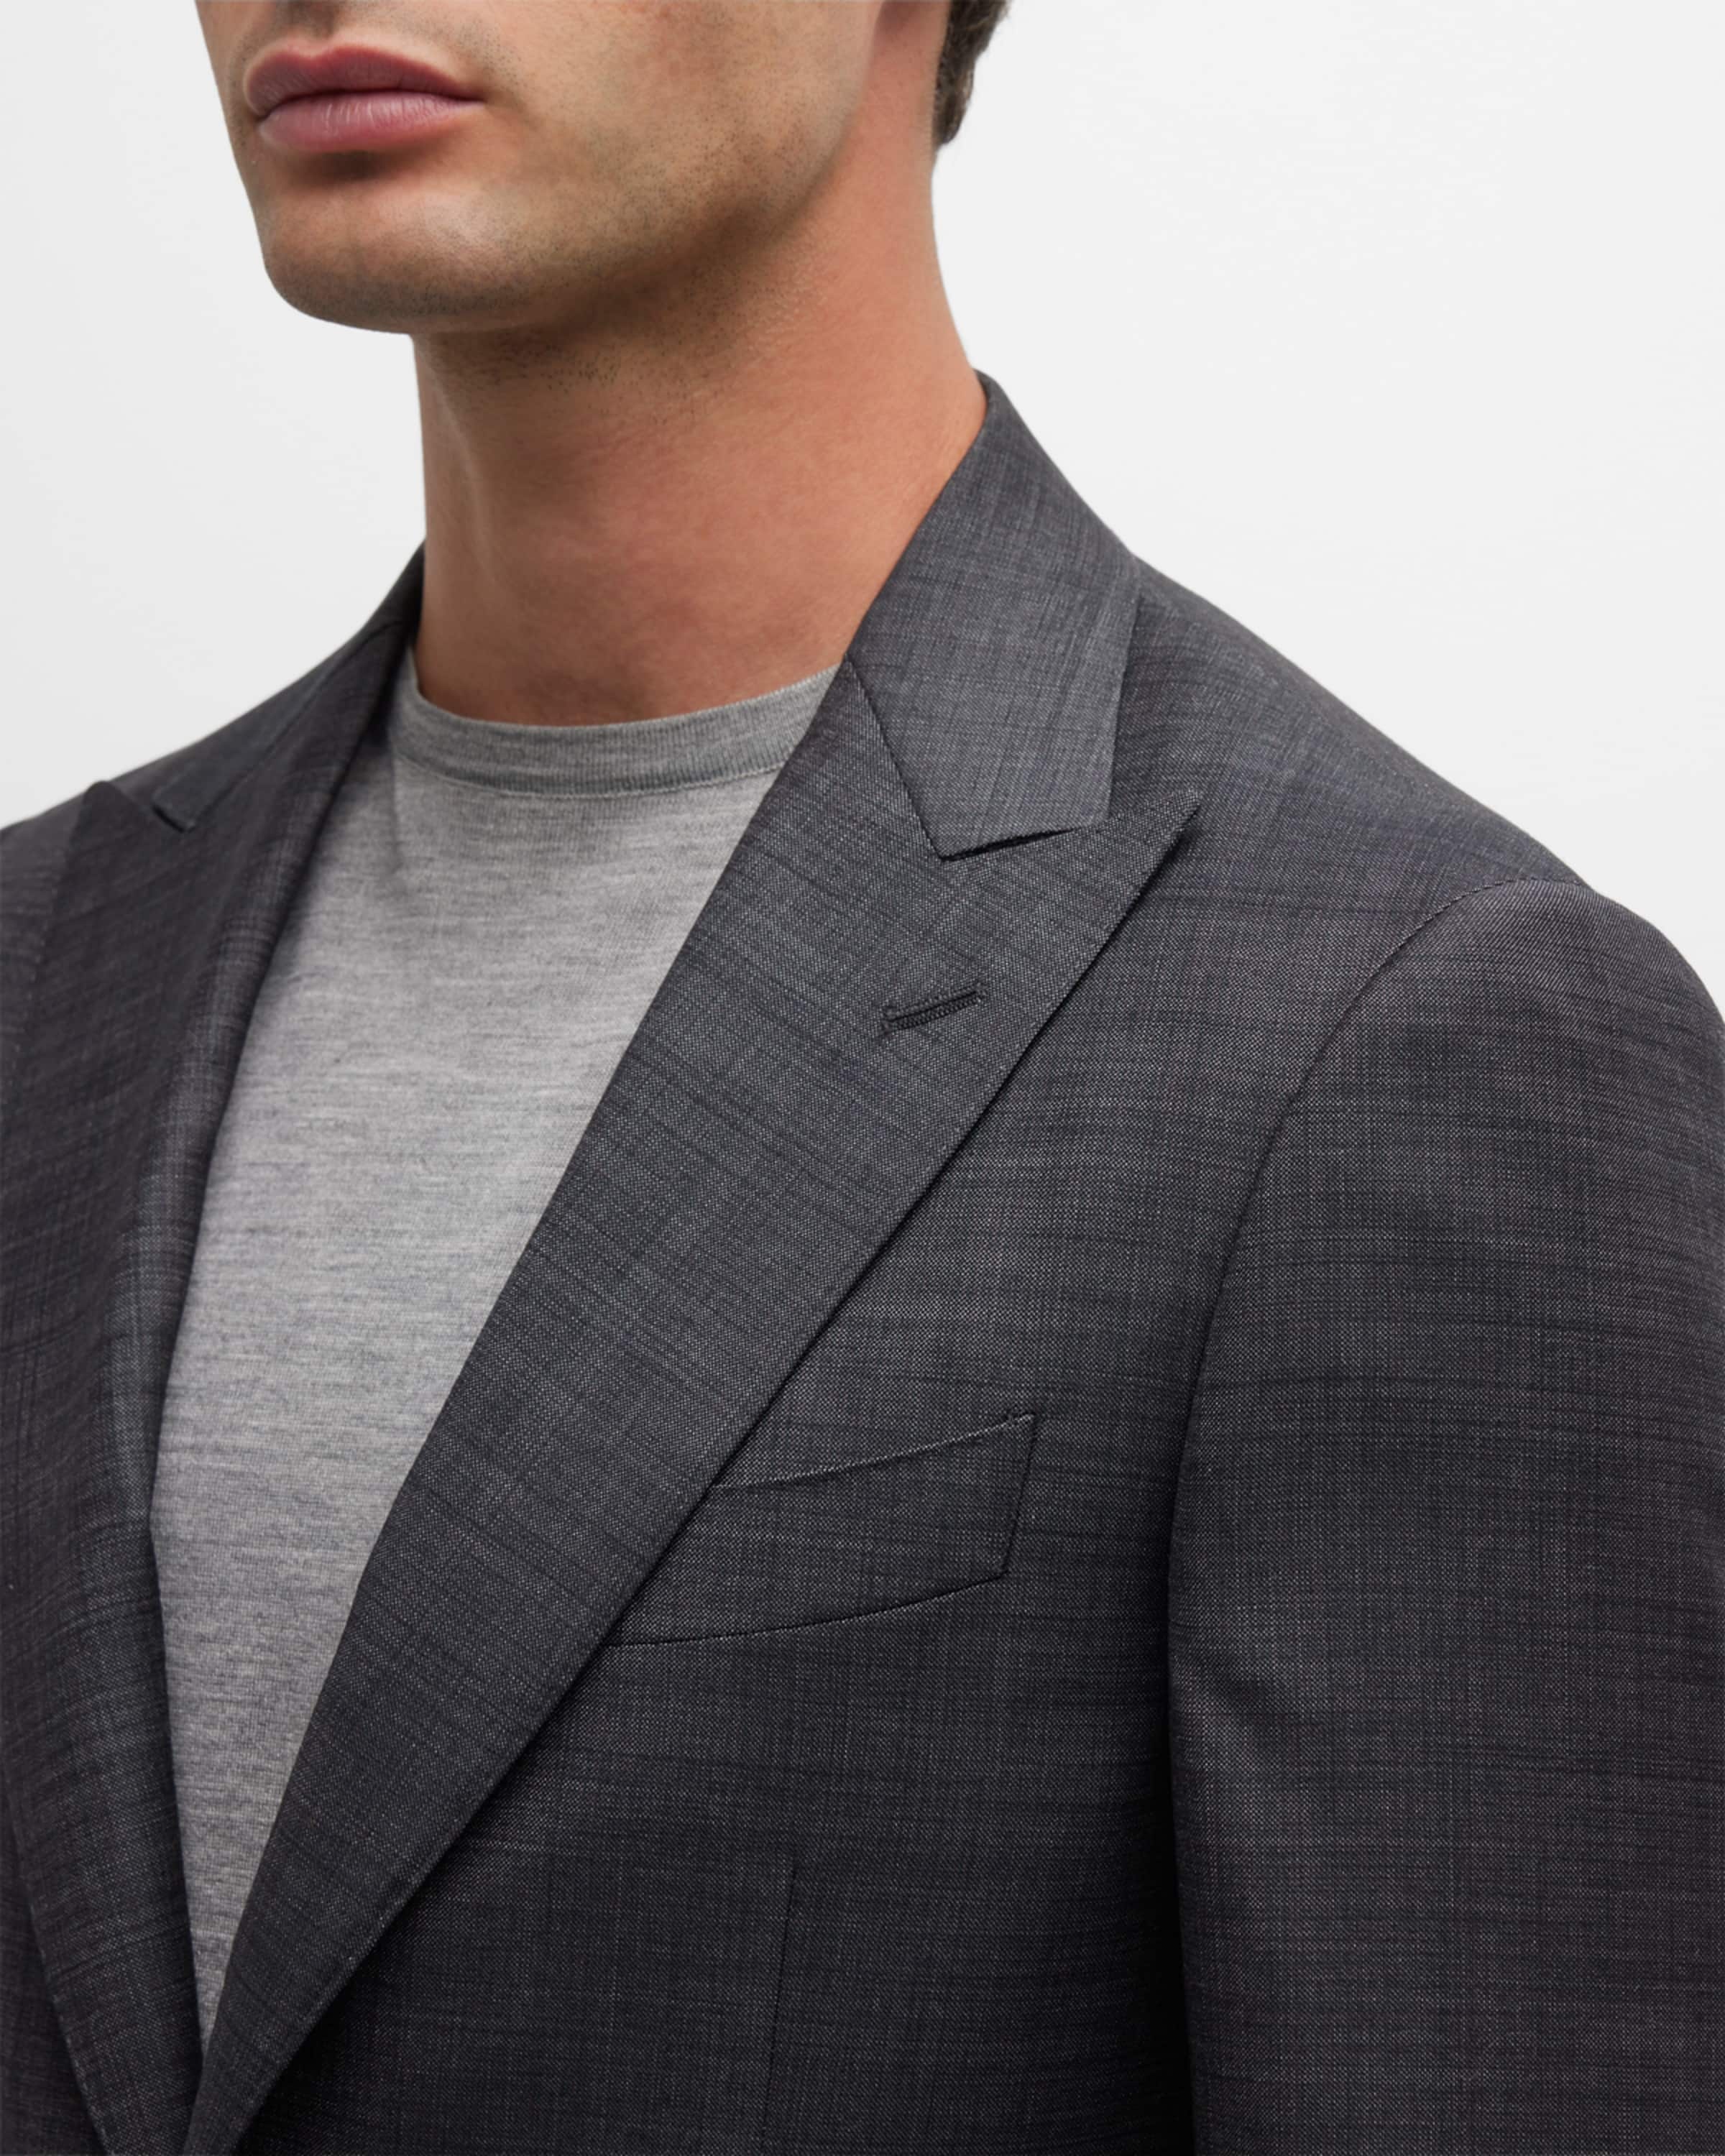 Men's Solid Wool Tic Suit - 2